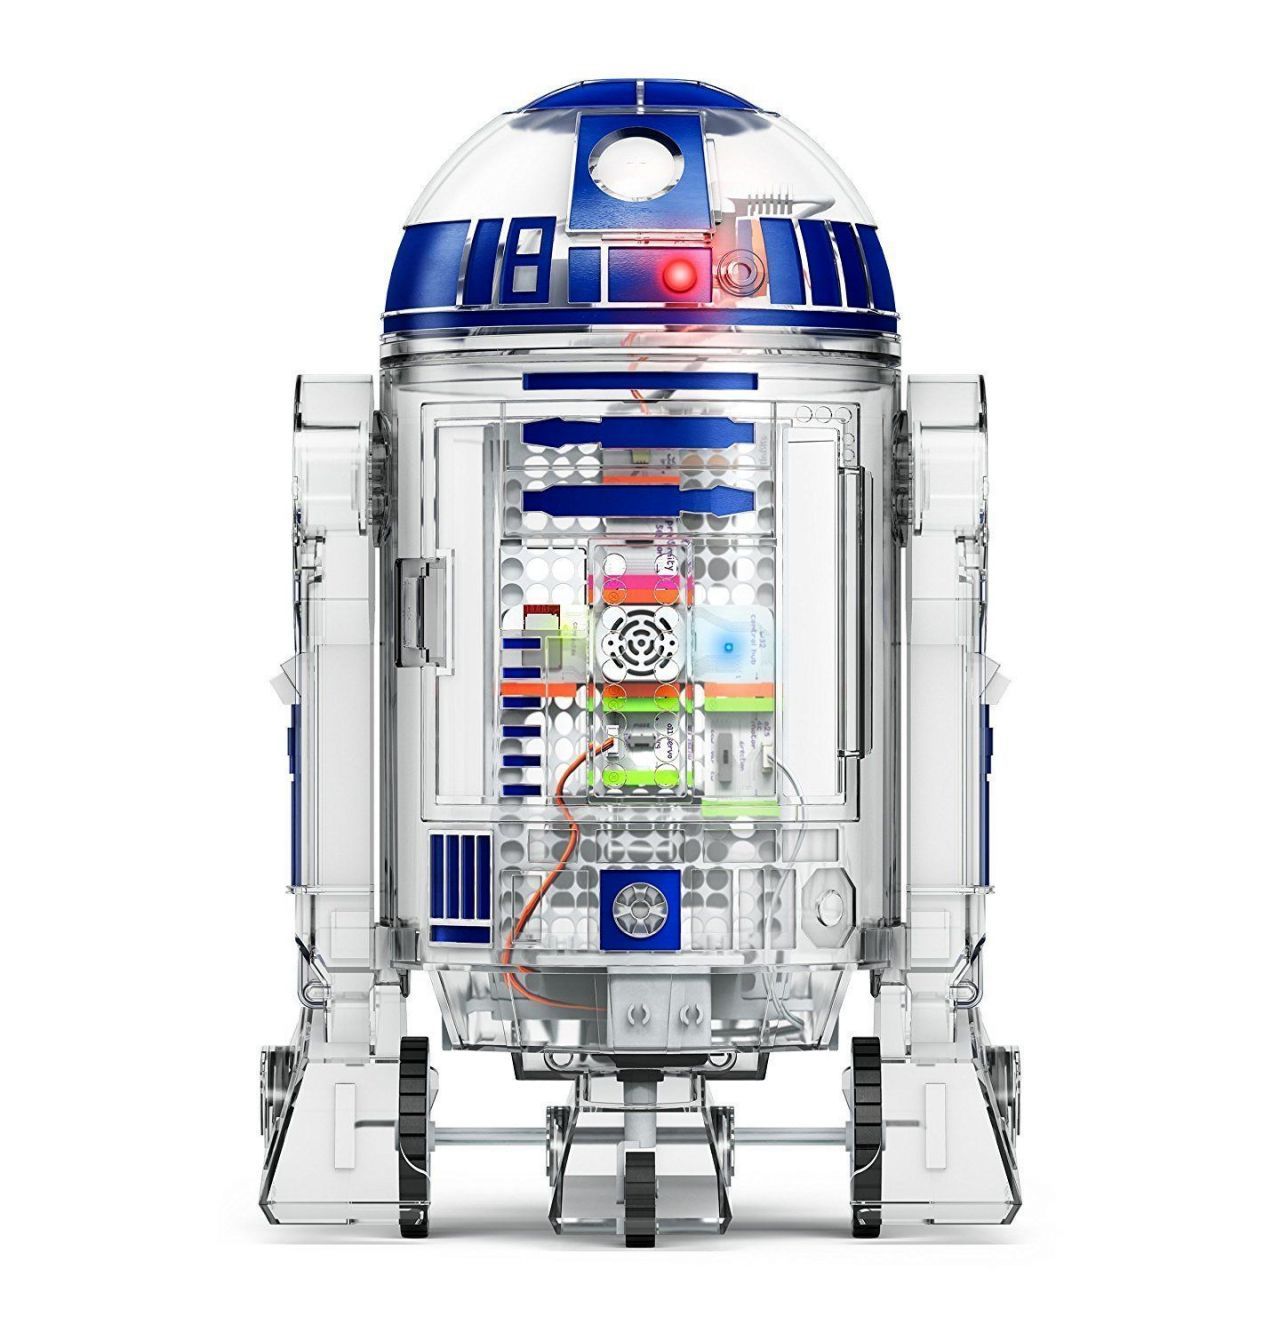 Star Wars : un kit pour assembler un R2-D2 disponible sur Amazon